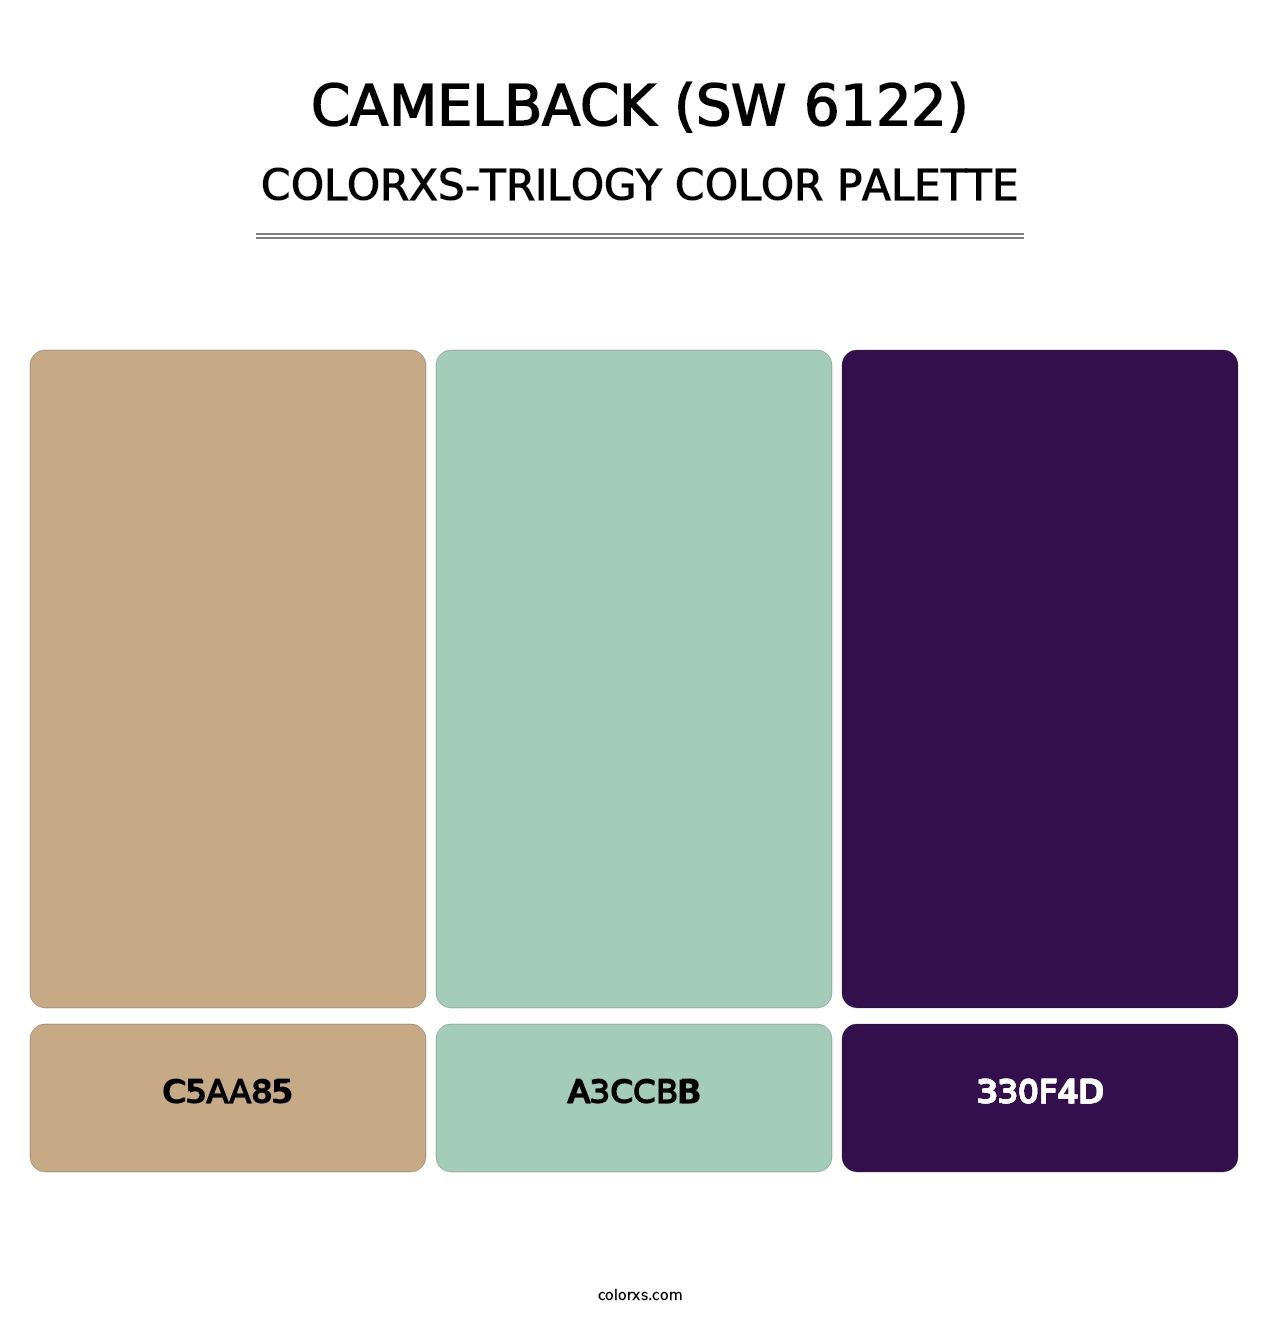 Camelback (SW 6122) - Colorxs Trilogy Palette